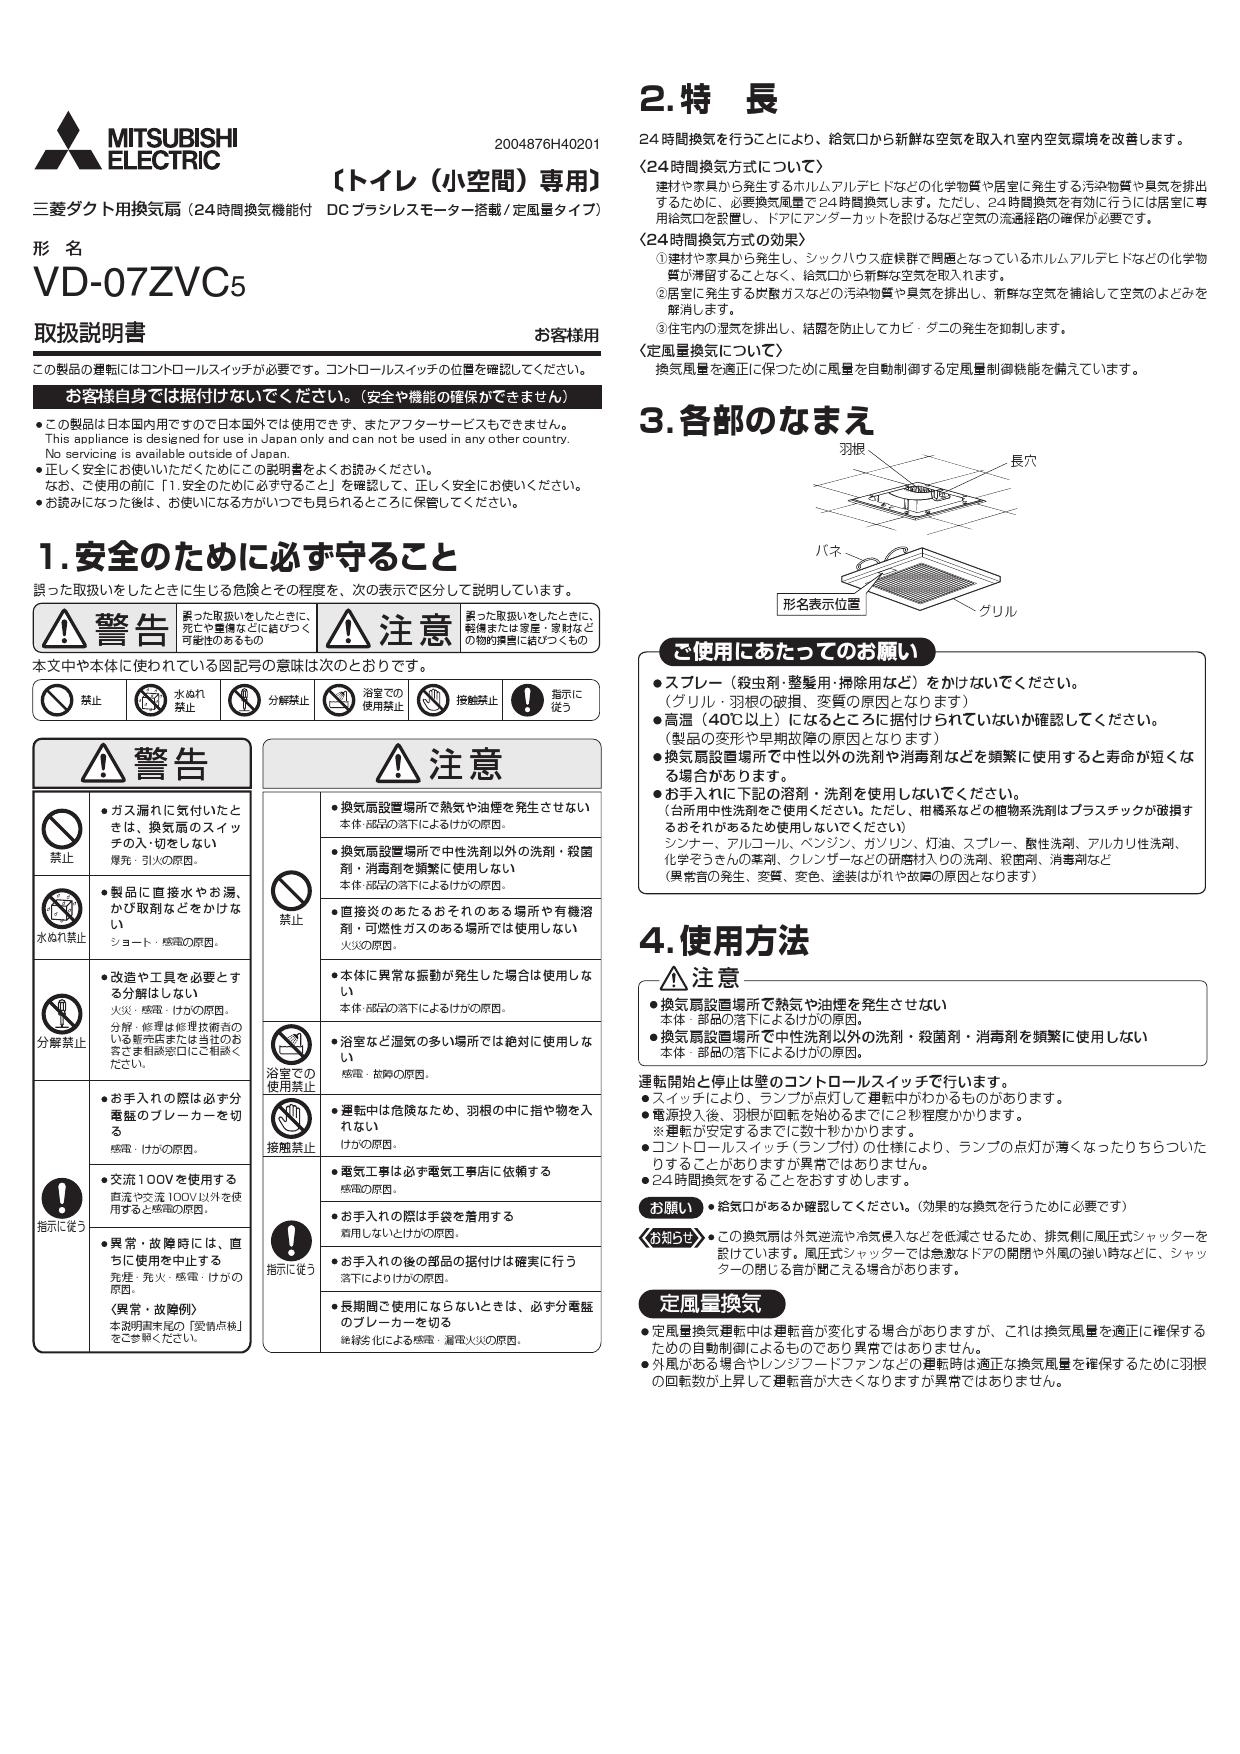 MITSUBISHI VD-20ZVEP6-FP 換気扇・ロスナイ 24時間換気機能付換気扇 ダクト用換気扇 - 2